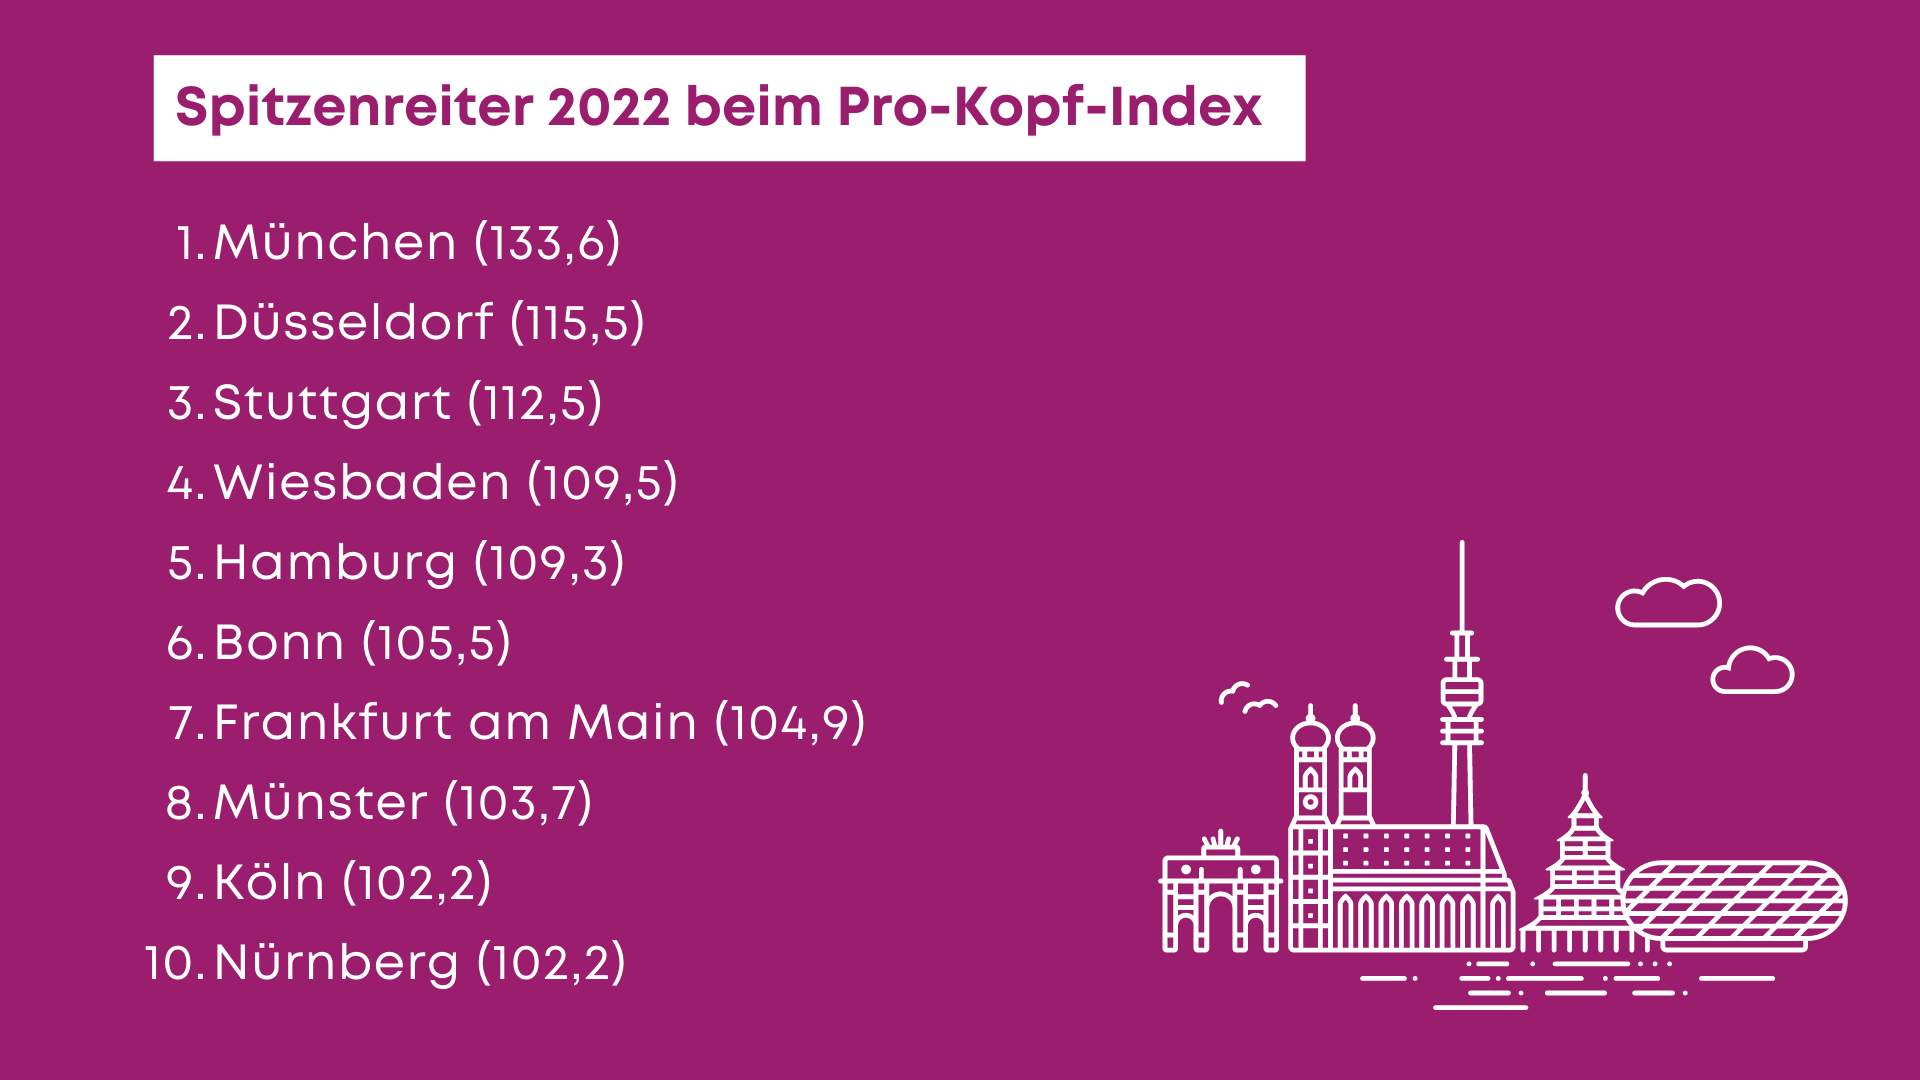 Welche Stadt führt beim Pro-Kopf-Index 2022